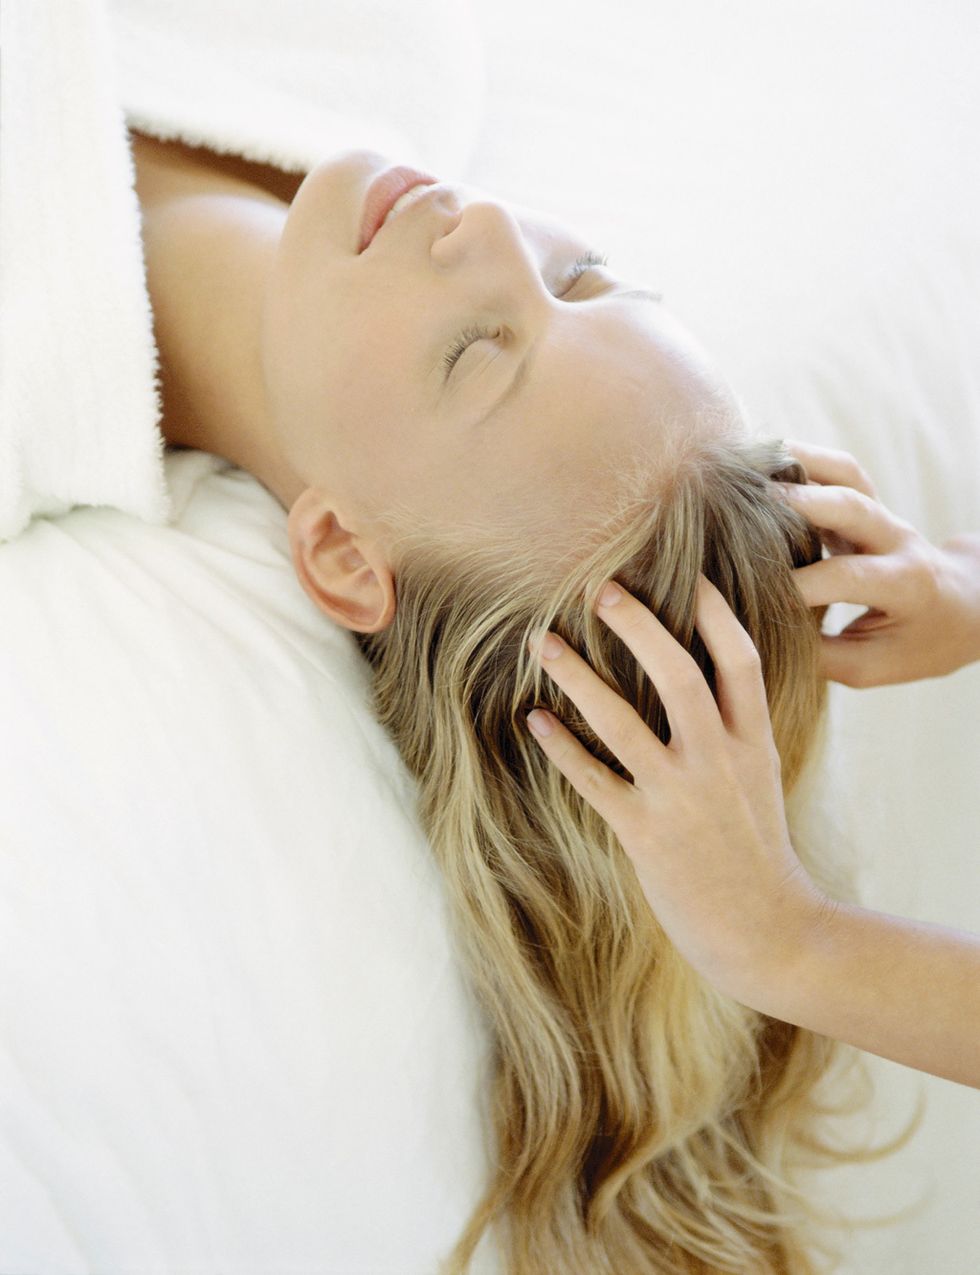 <p>Terapia anti caída&nbsp;</p><p>&nbsp;“Con los masajes capilares conseguimos movilizar la piel del cuero cabelludo, para propiciar una mejor y más fluida circulación sanguínea. Con ello conseguimos que los folículos se alimenten, y crezca el cabello más sano”, dice la experta. Según Jiménez, “el masaje capilar, aparte de ser placentero, es ideal para estimular el crecimiento de un cabello saludable ya que al relajar el cuero cabelludo conseguirnos un cabello sin estrés, por lo tanto más brillante y limpio durante más tiempo”.&nbsp;</p><p>&nbsp;</p>